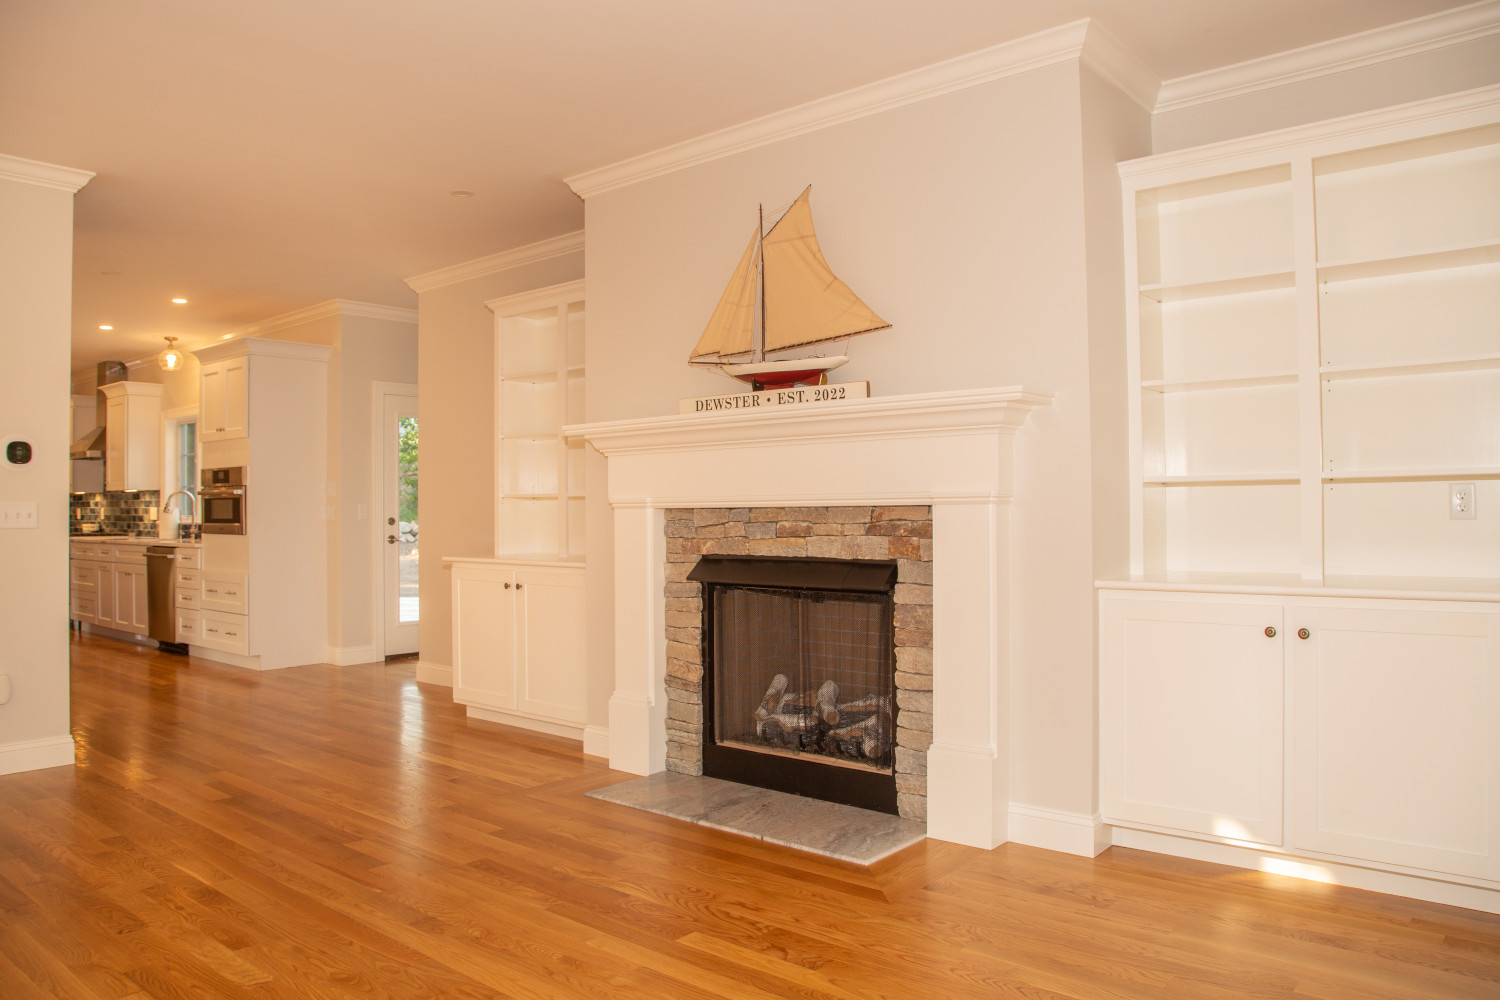 Fireplace., living room, kitchen all wood flooring, open floor plan